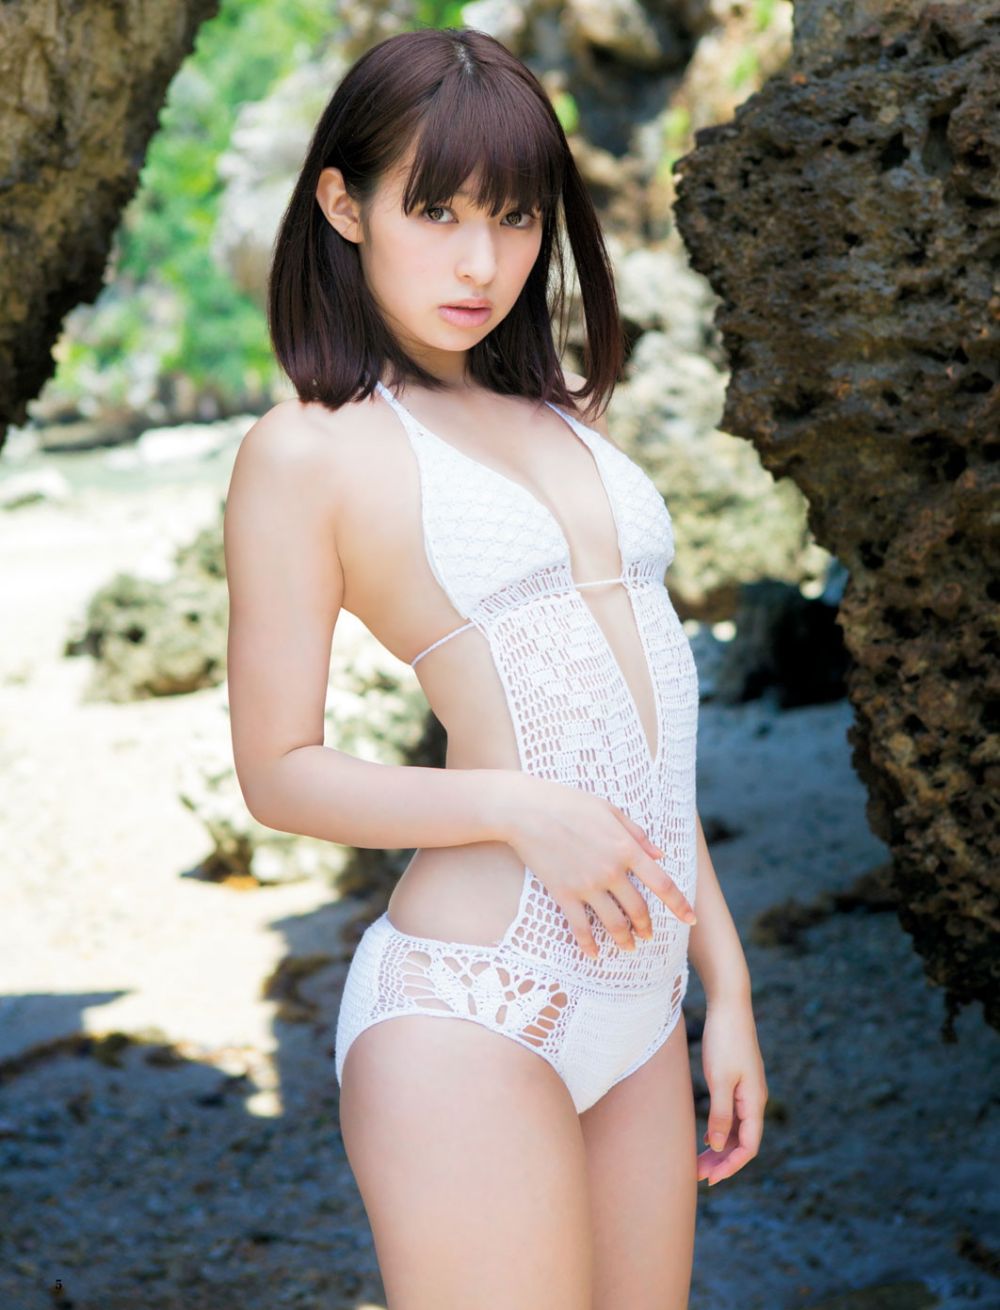 Kyoko Hinami Sexy and Hottest Photos , Latest Pics